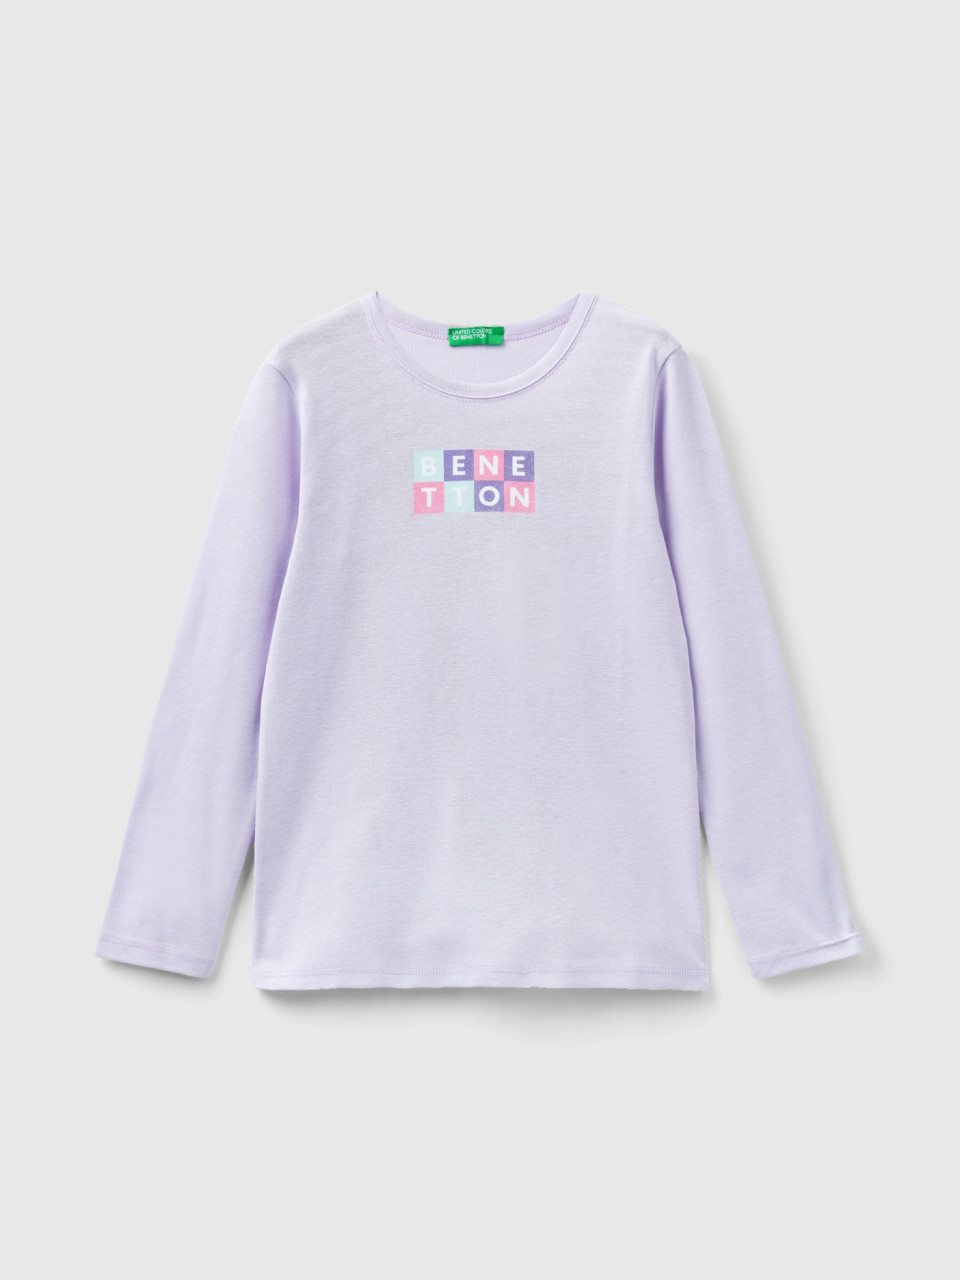 Benetton, Camiseta De Manga Larga Con Estampado De Glitter, Lila, Niños